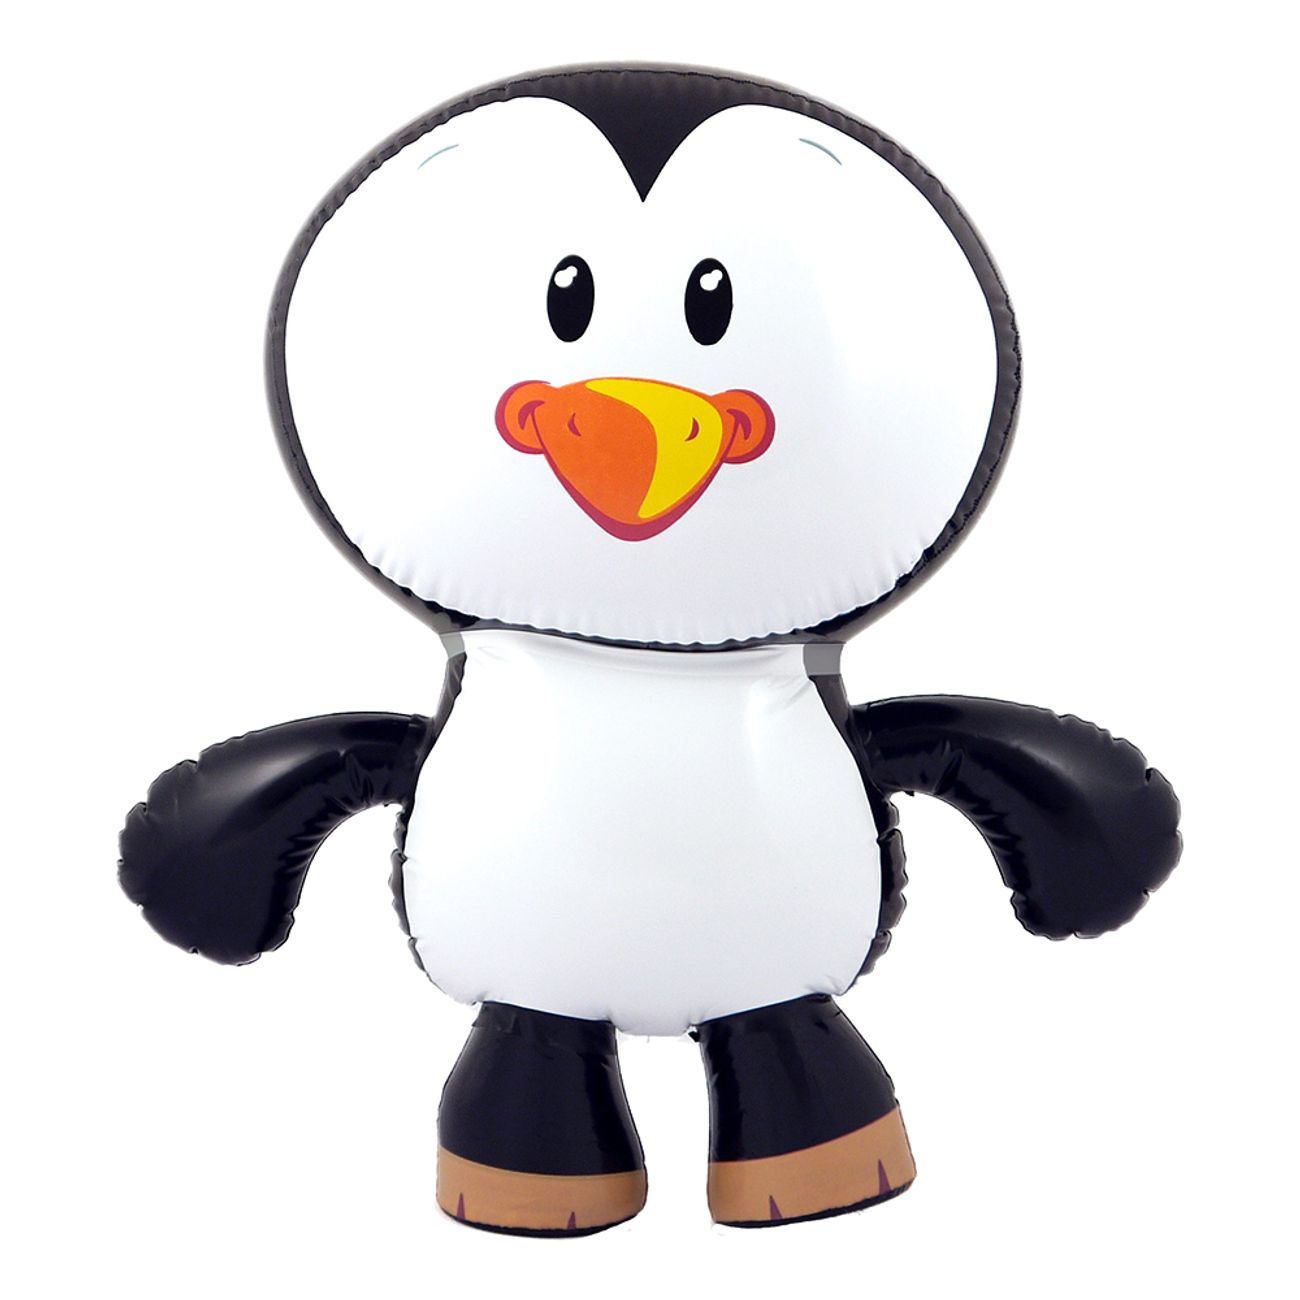 pingvin-uppblasbar-1